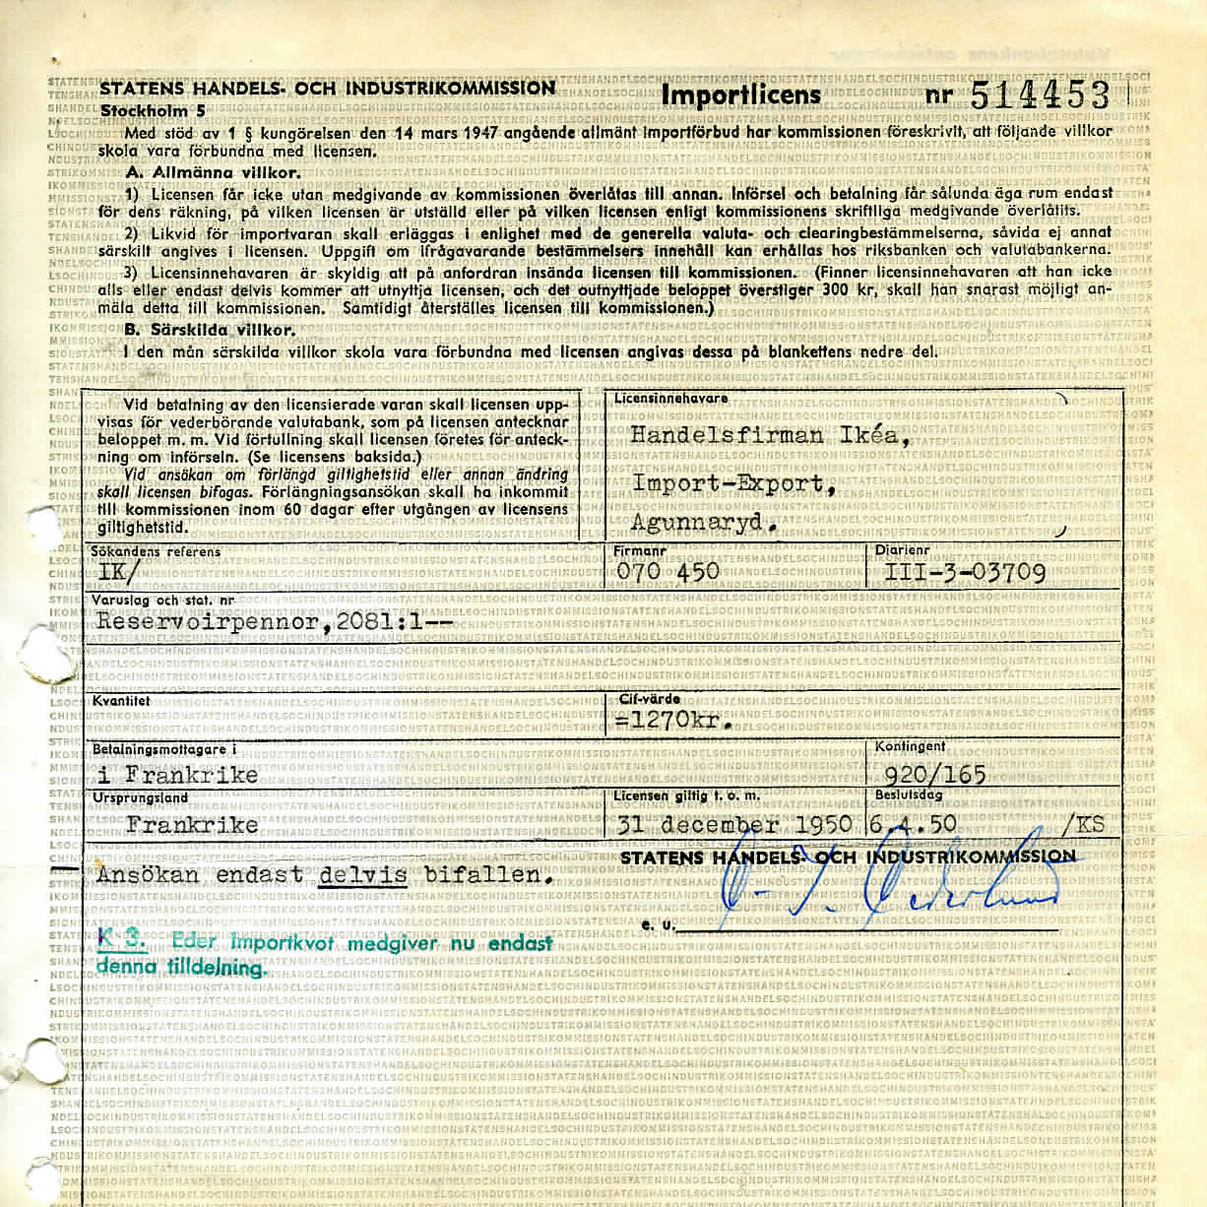 Faksimil, gulnad signerad importlicens, med text om kulspetspennor från Frankrike för Ikéa, delvis godkänd, 1950.